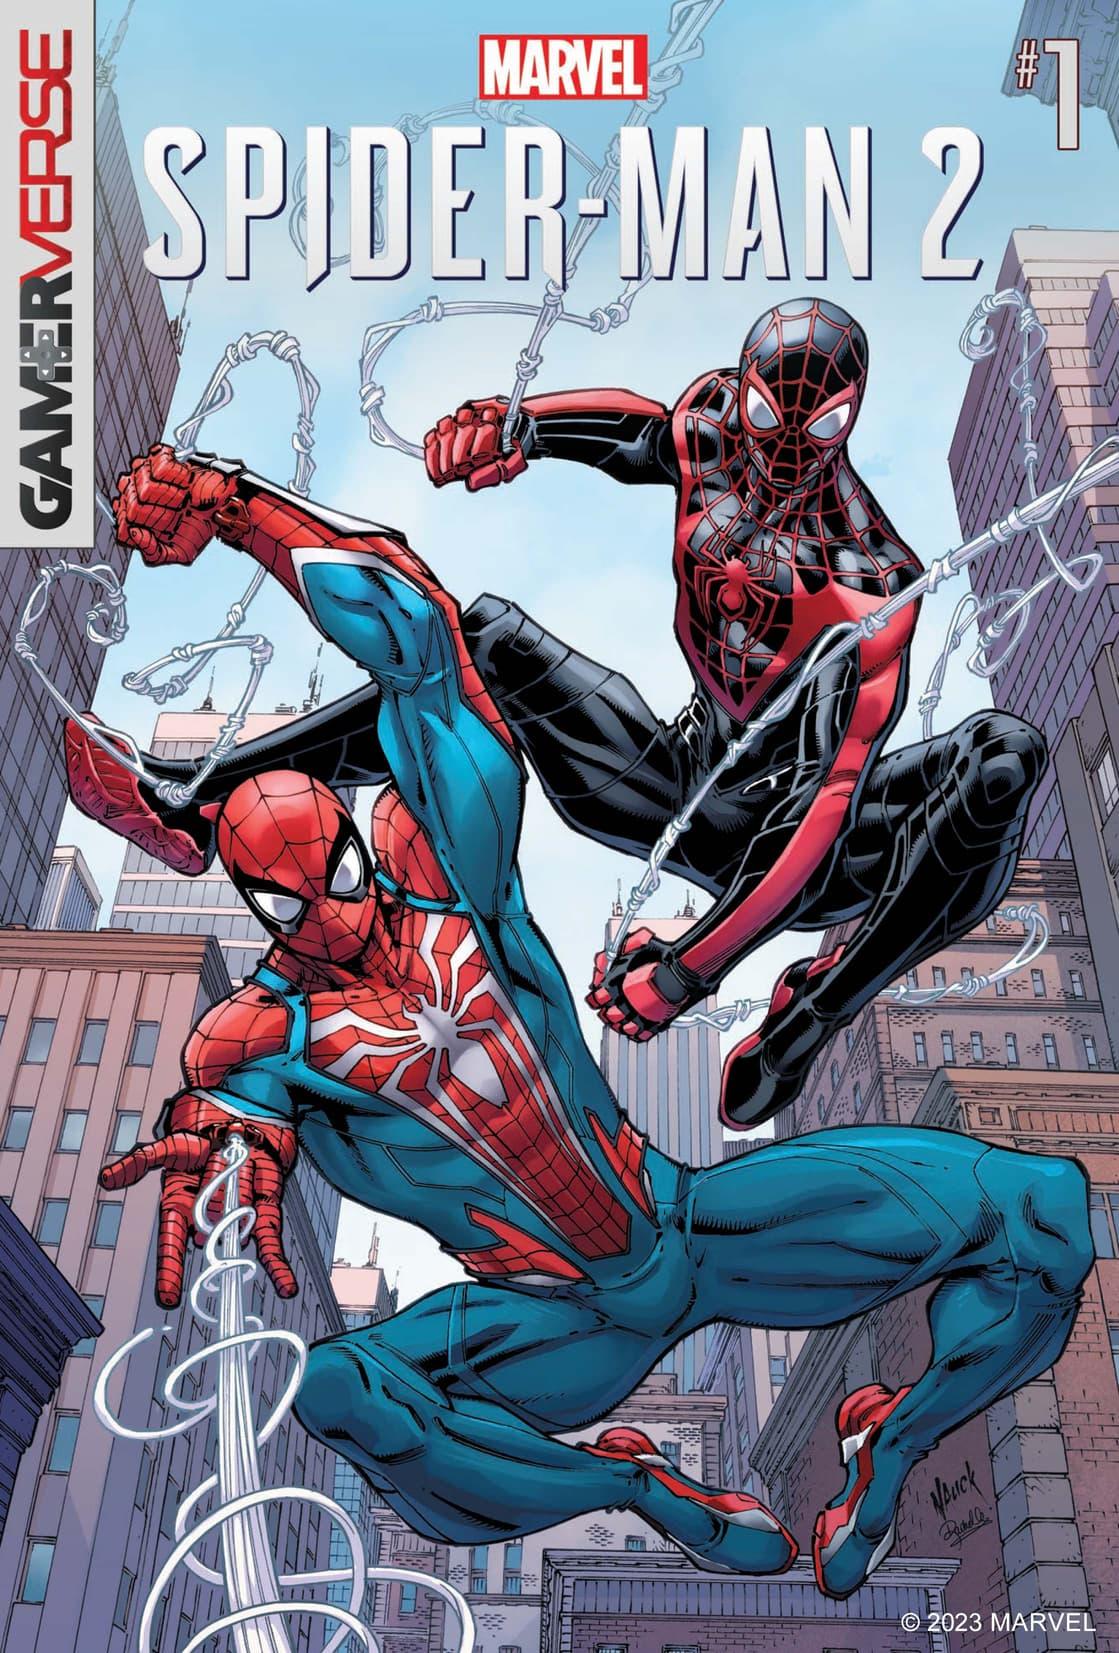 marvels-spider-man-2-fcbd-portada.jpg